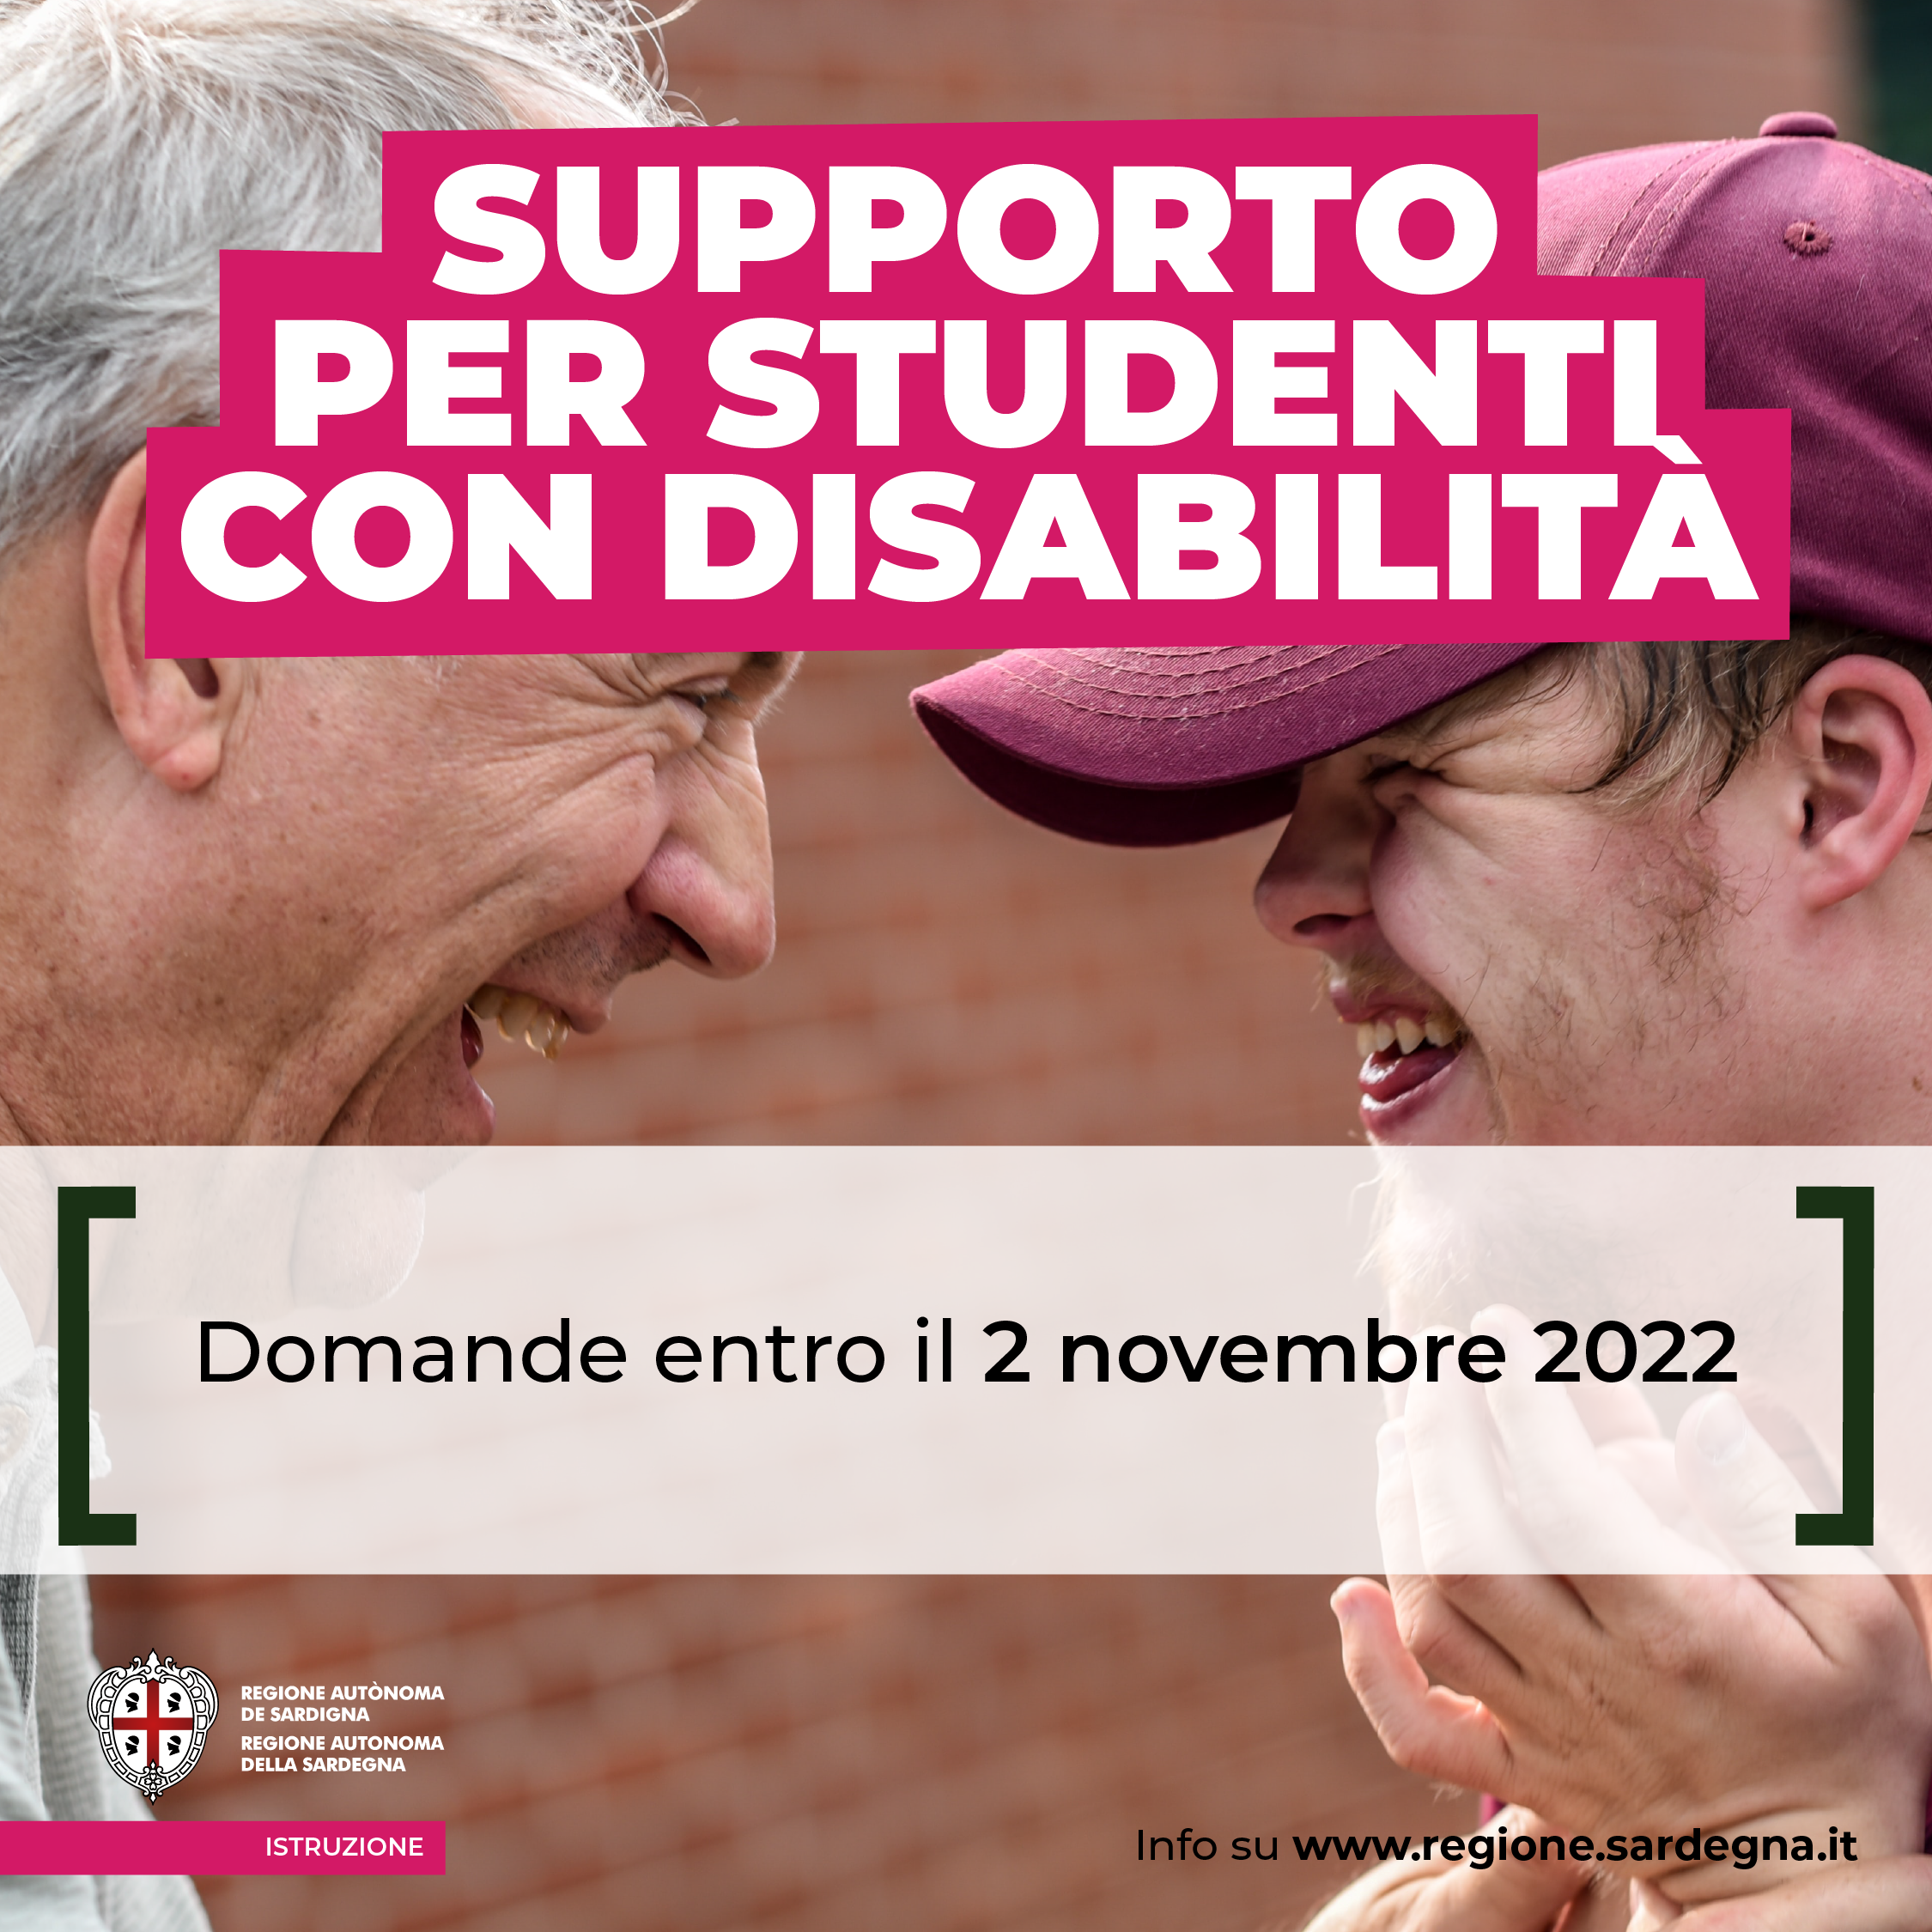 Supporto per studenti con disabilità